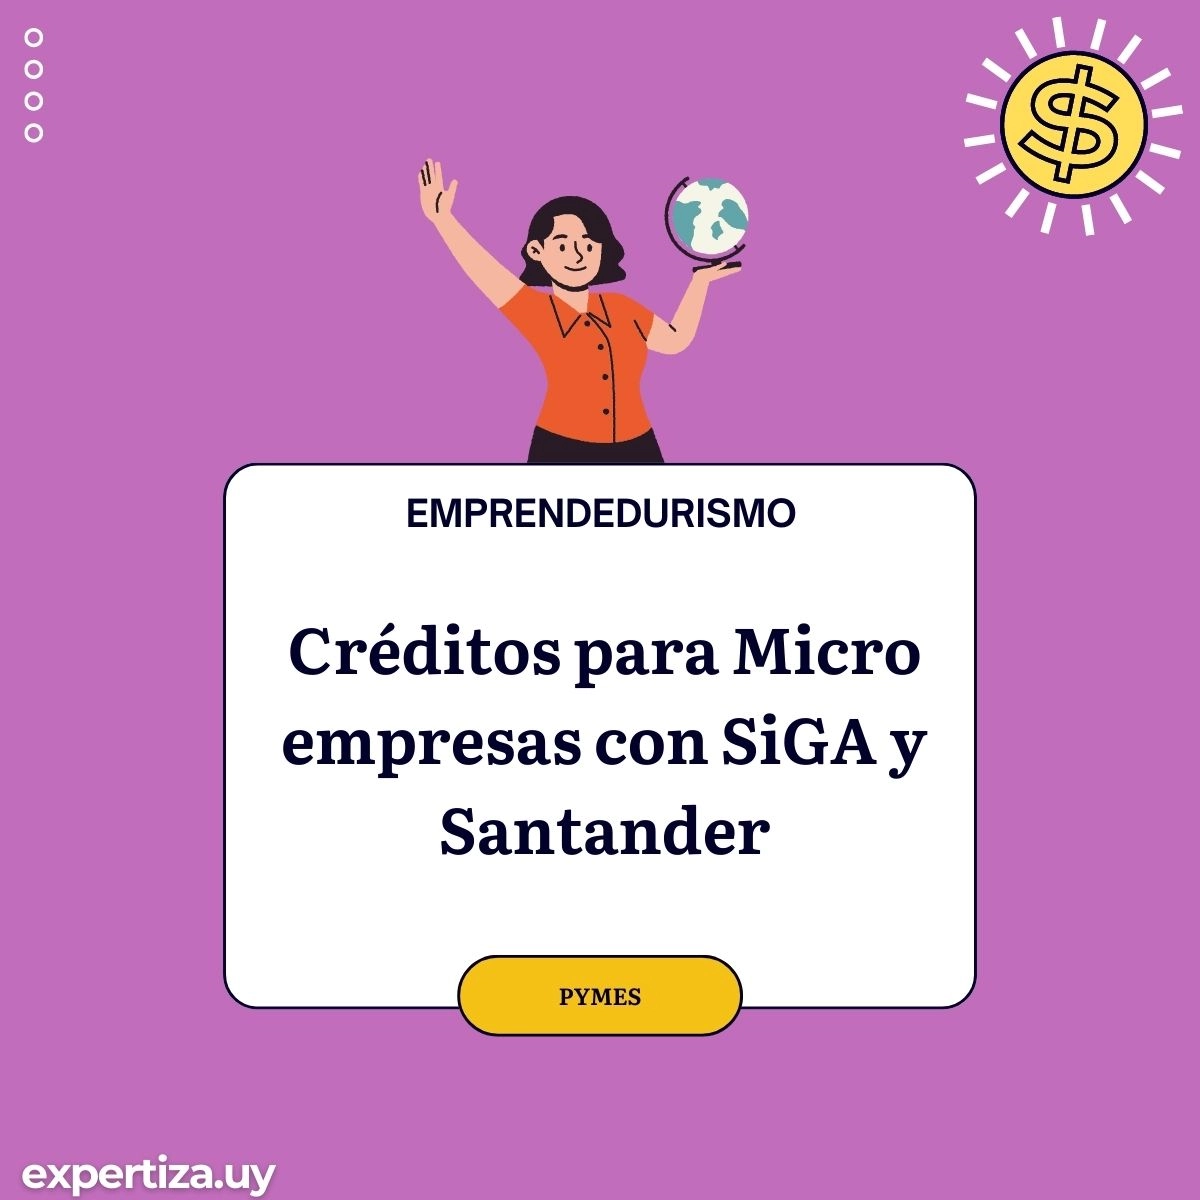 Créditos para Micro empresas con SiGA y Santander.